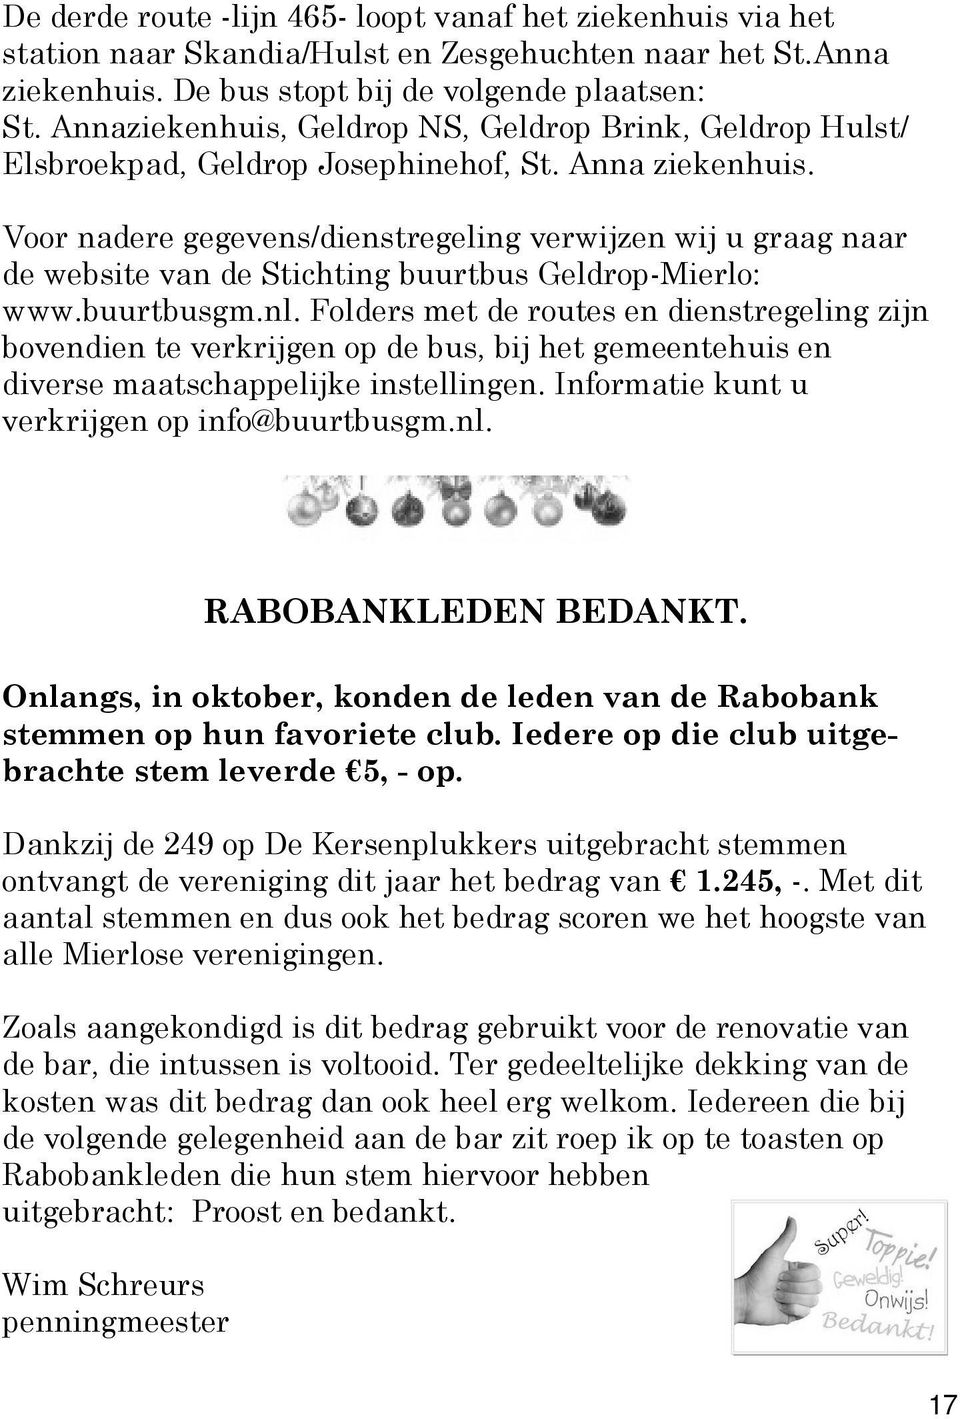 Voor nadere gegevens/dienstregeling verwijzen wij u graag naar de website van de Stichting buurtbus Geldrop-Mierlo: www.buurtbusgm.nl.